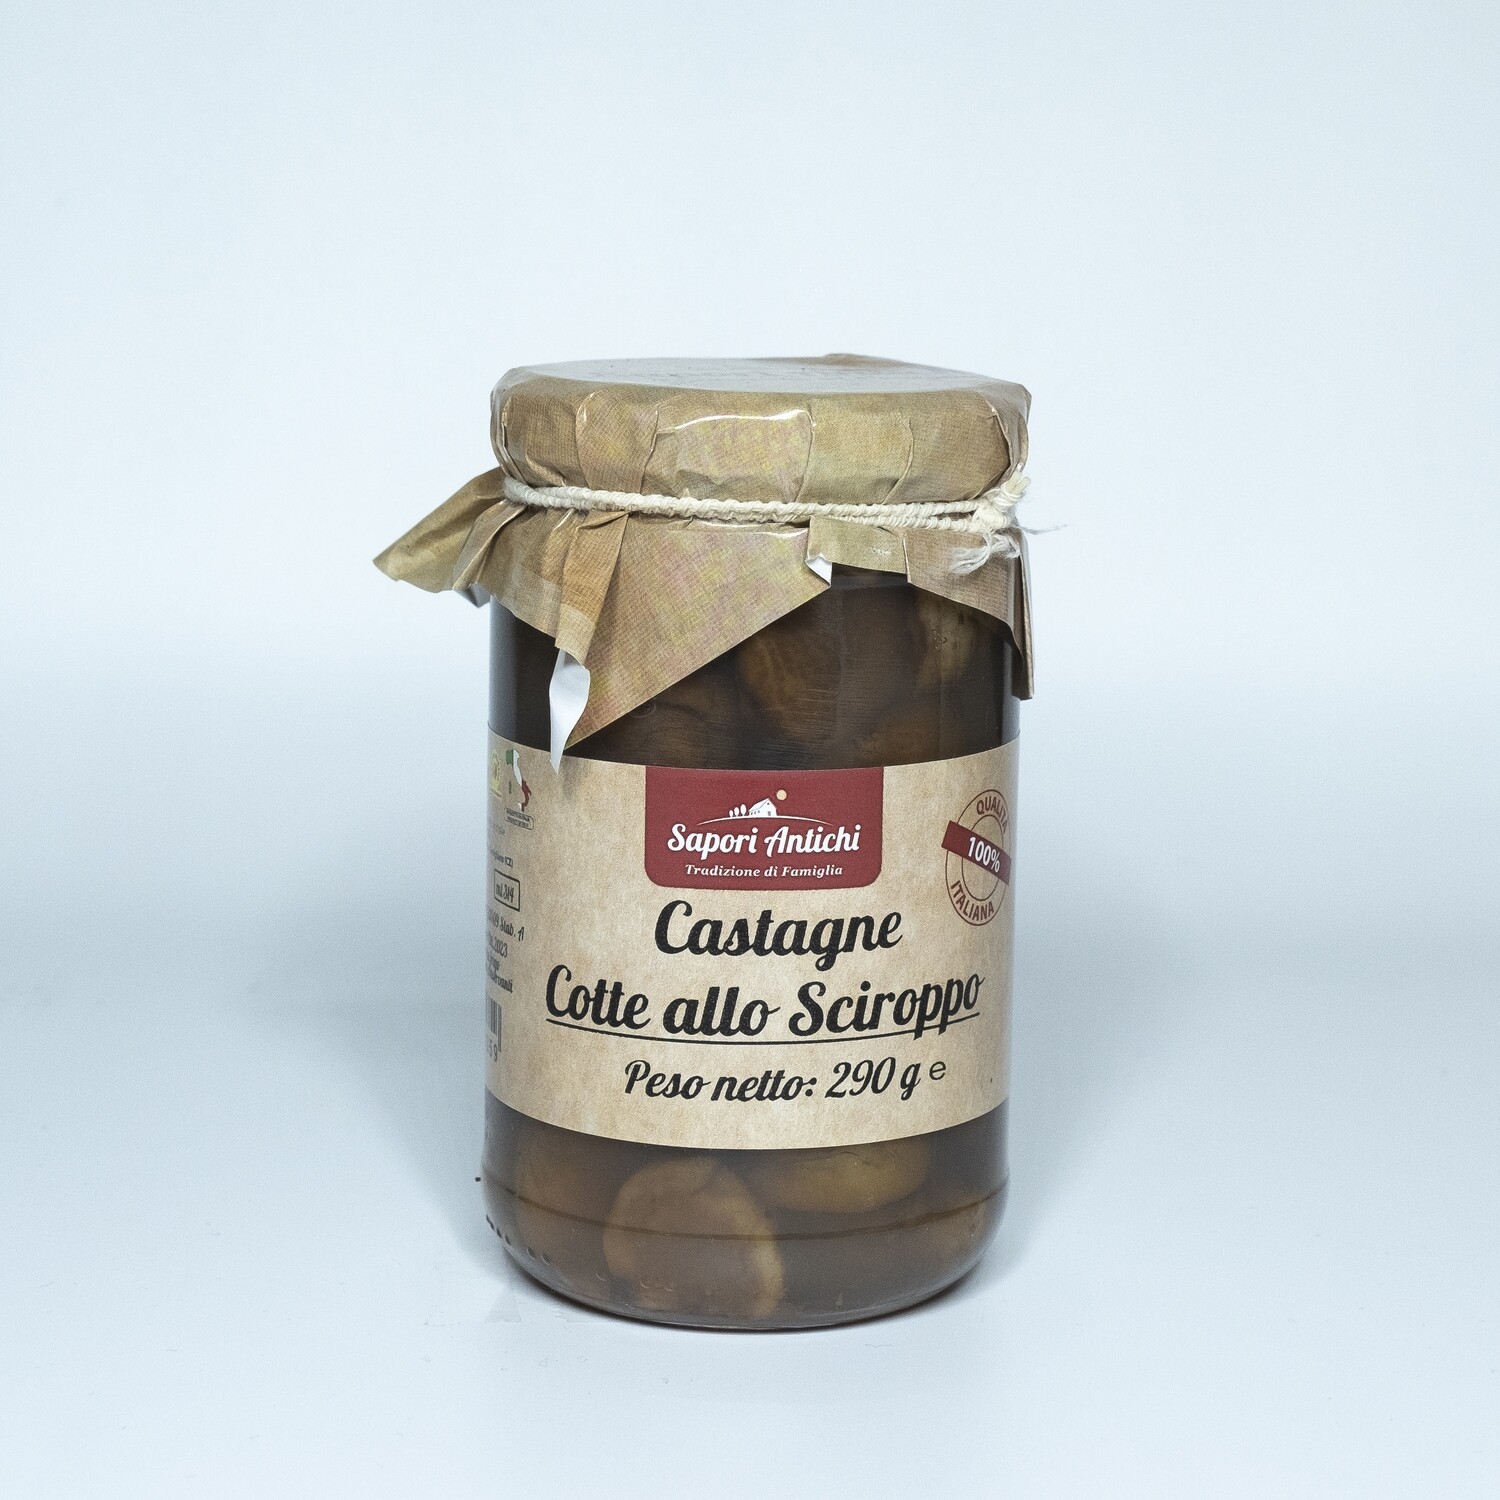 Castagne cotte